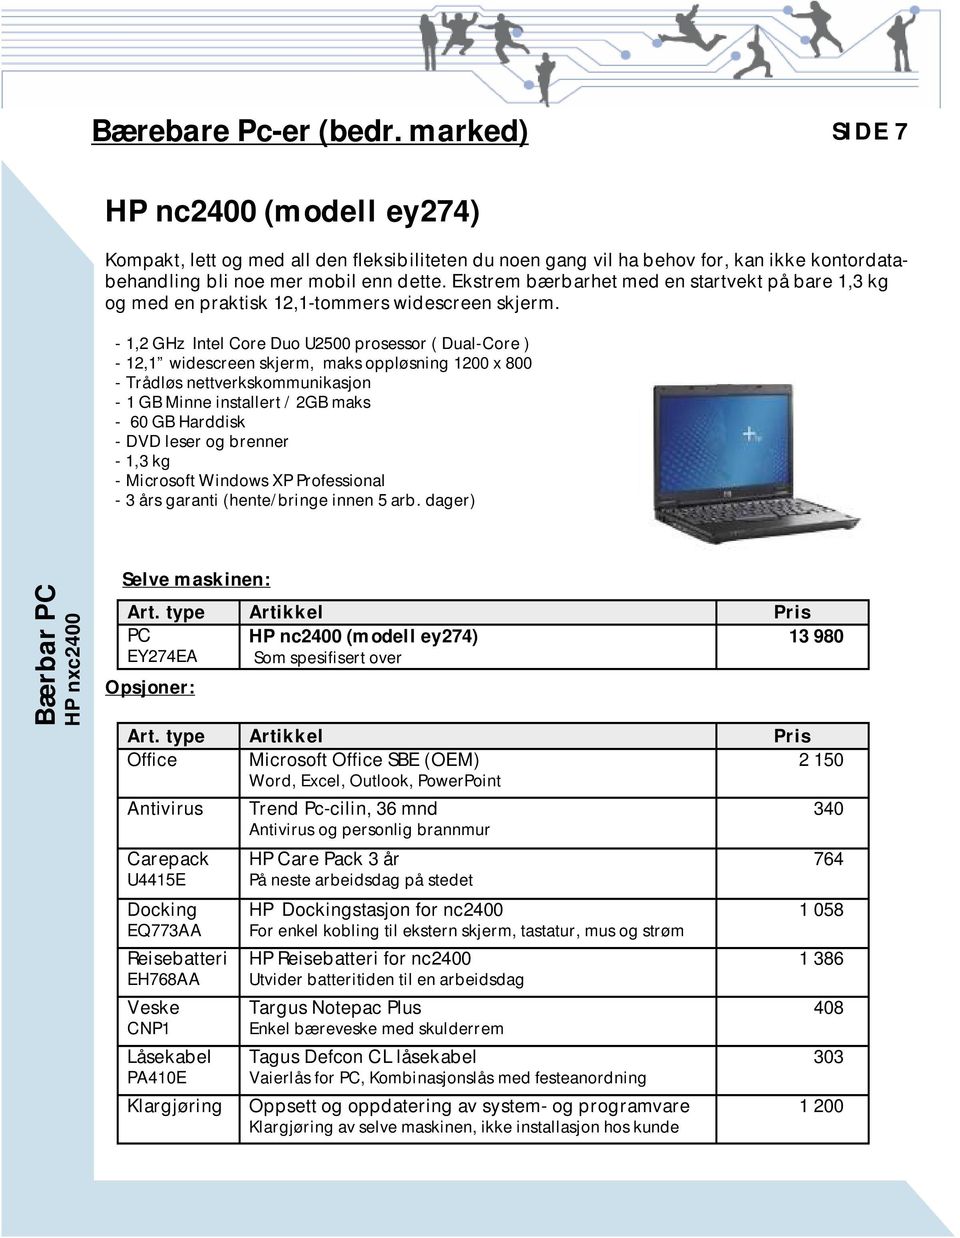 - 1,2 GHz Intel Core Duo U2500 prosessor ( Dual-Core ) - 12,1 widescreen skjerm, maks oppløsning 1200 x 800 - Trådløs nettverkskommunikasjon - 1 GB Minne installert / 2GB maks - 60 GB Harddisk - DVD